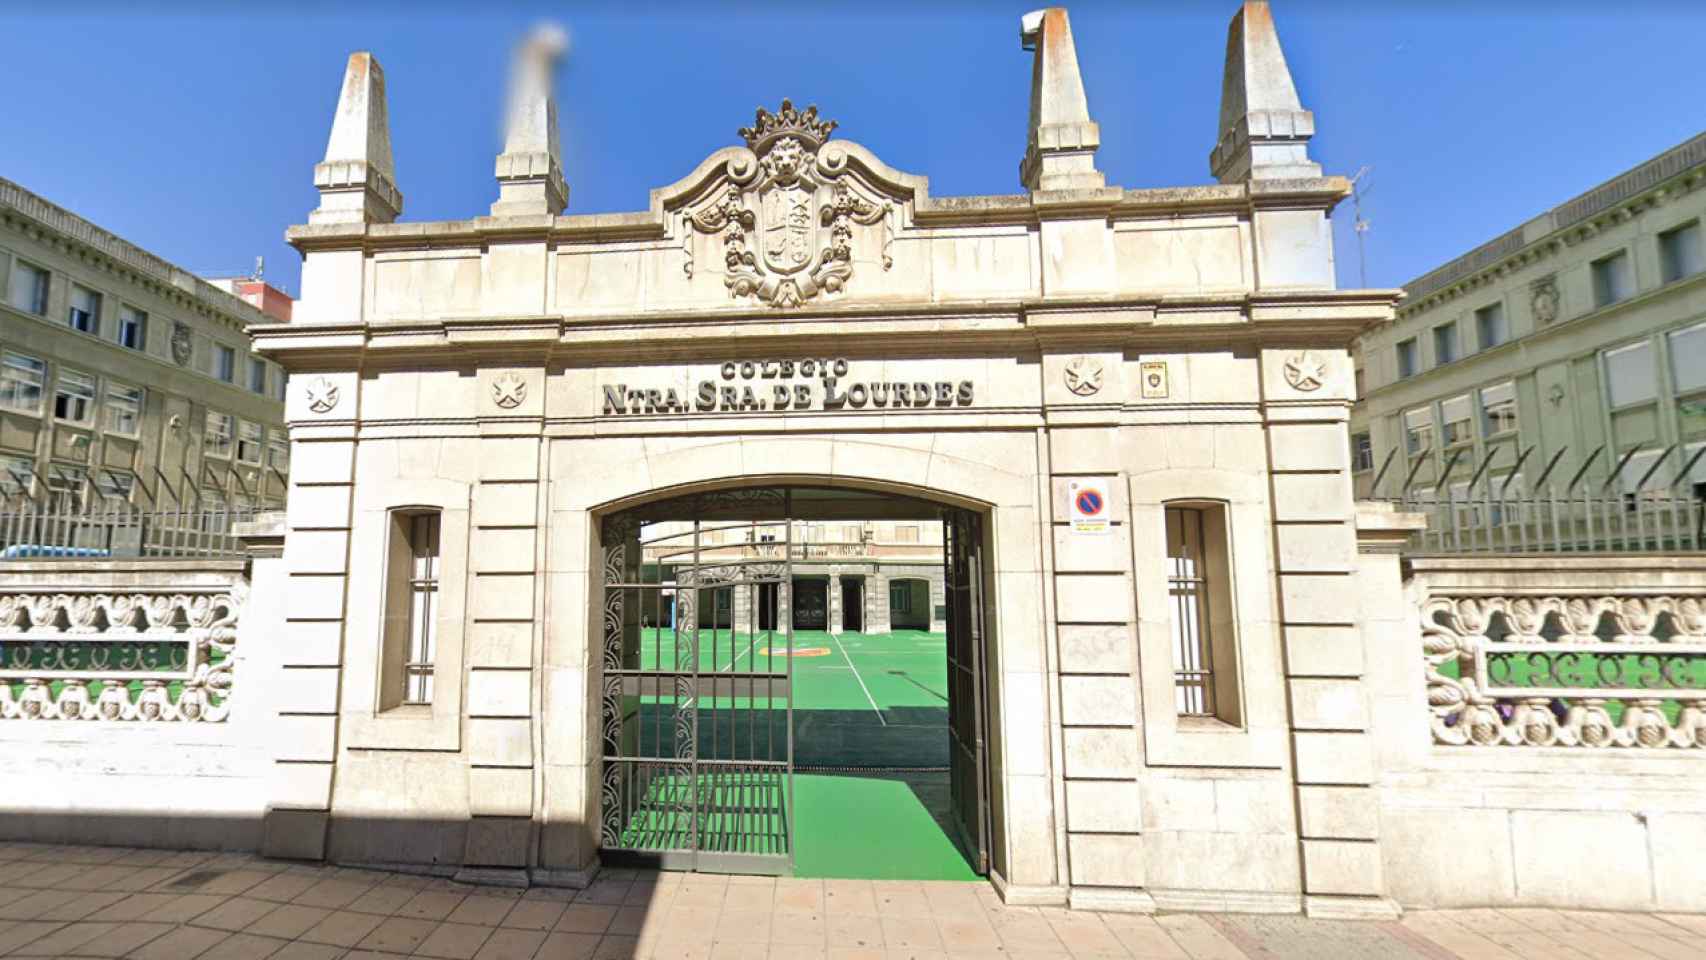 Entrada del Colegio de Nuestra Señora Lourdes de Valladolid